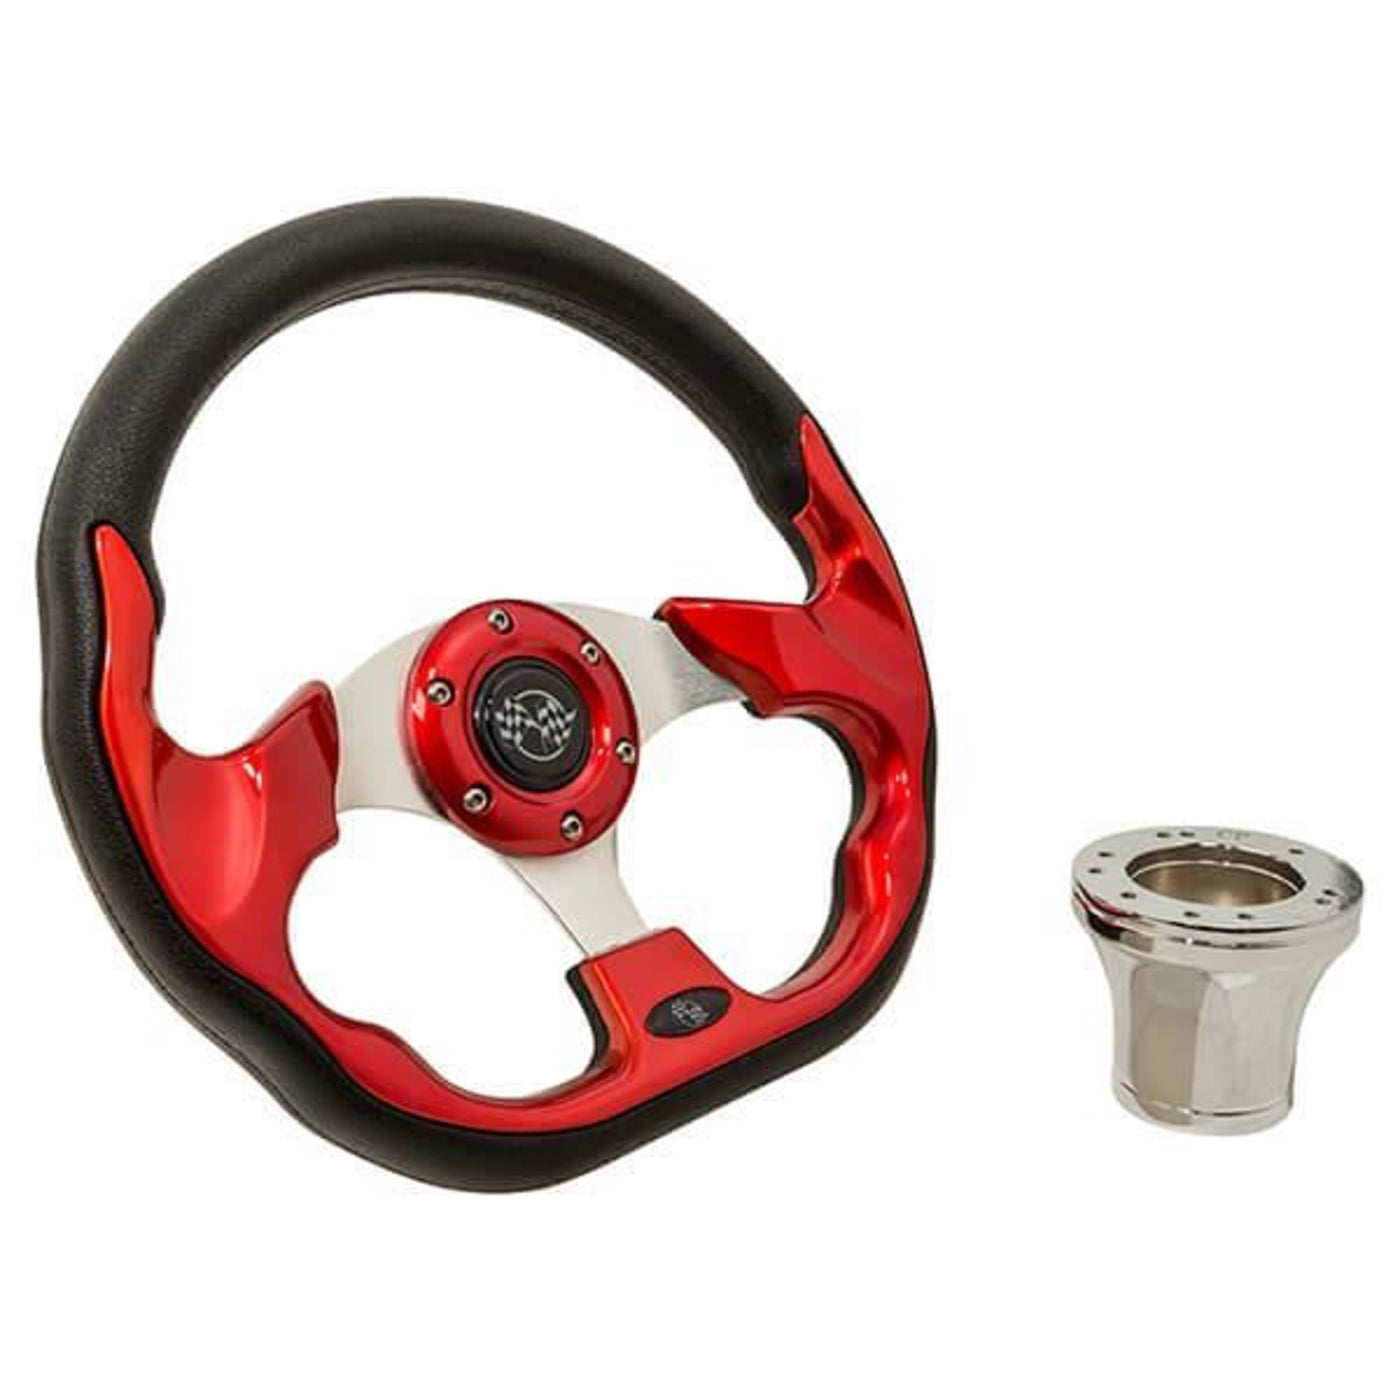 Club Car Precedent Red Racer Steering Wheel Kit